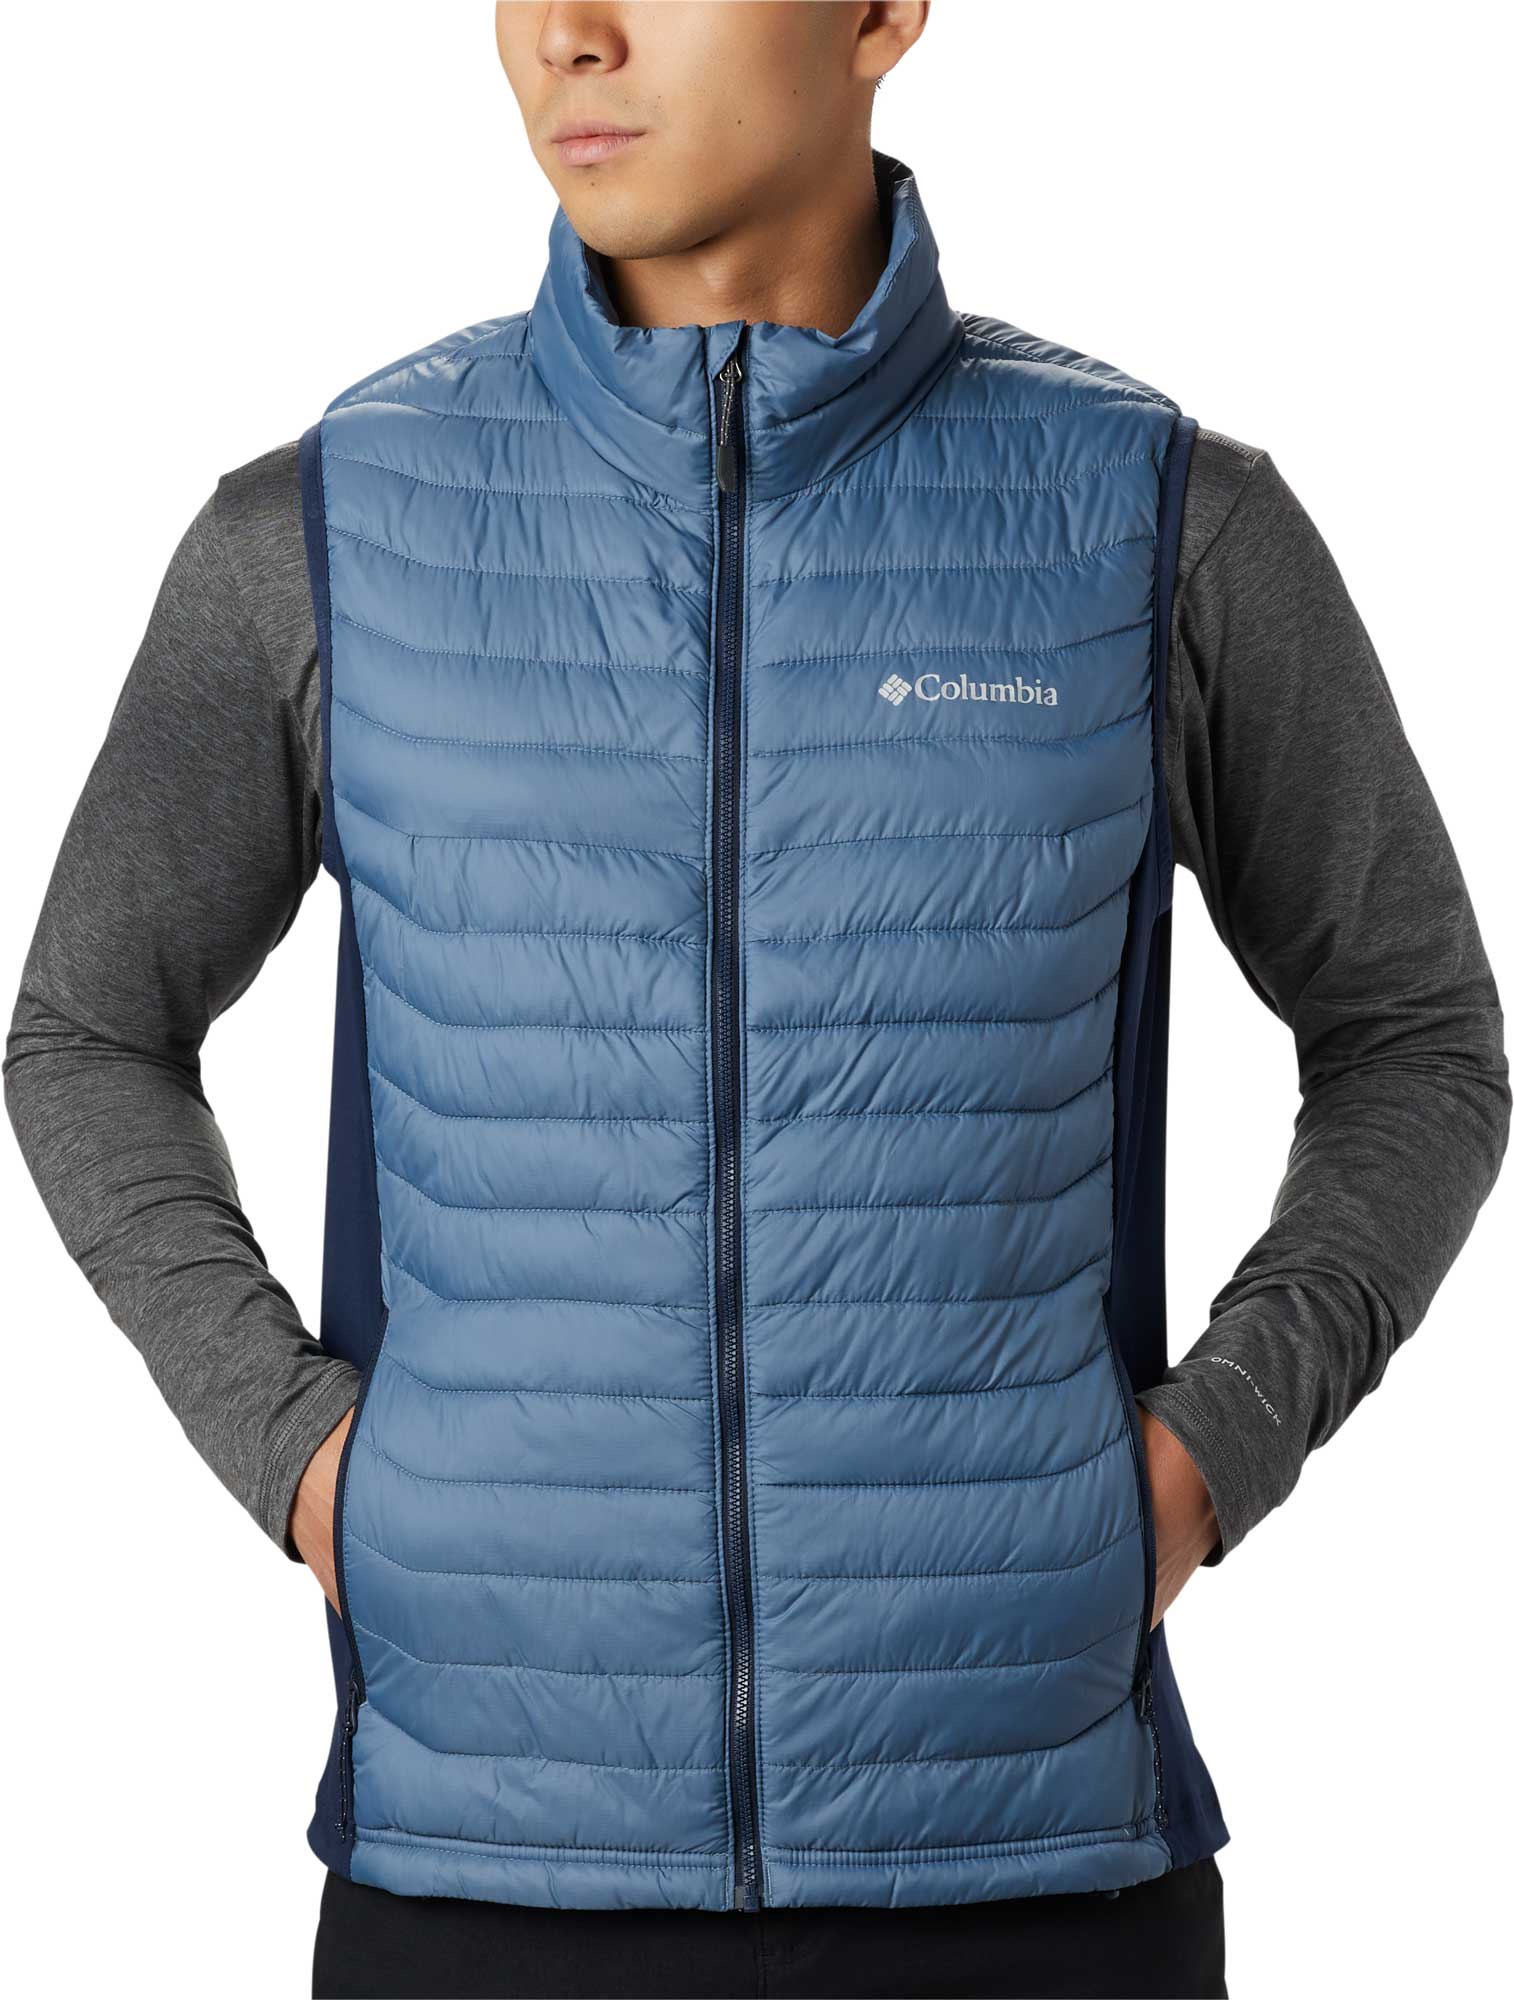 Men’s outdoor vest